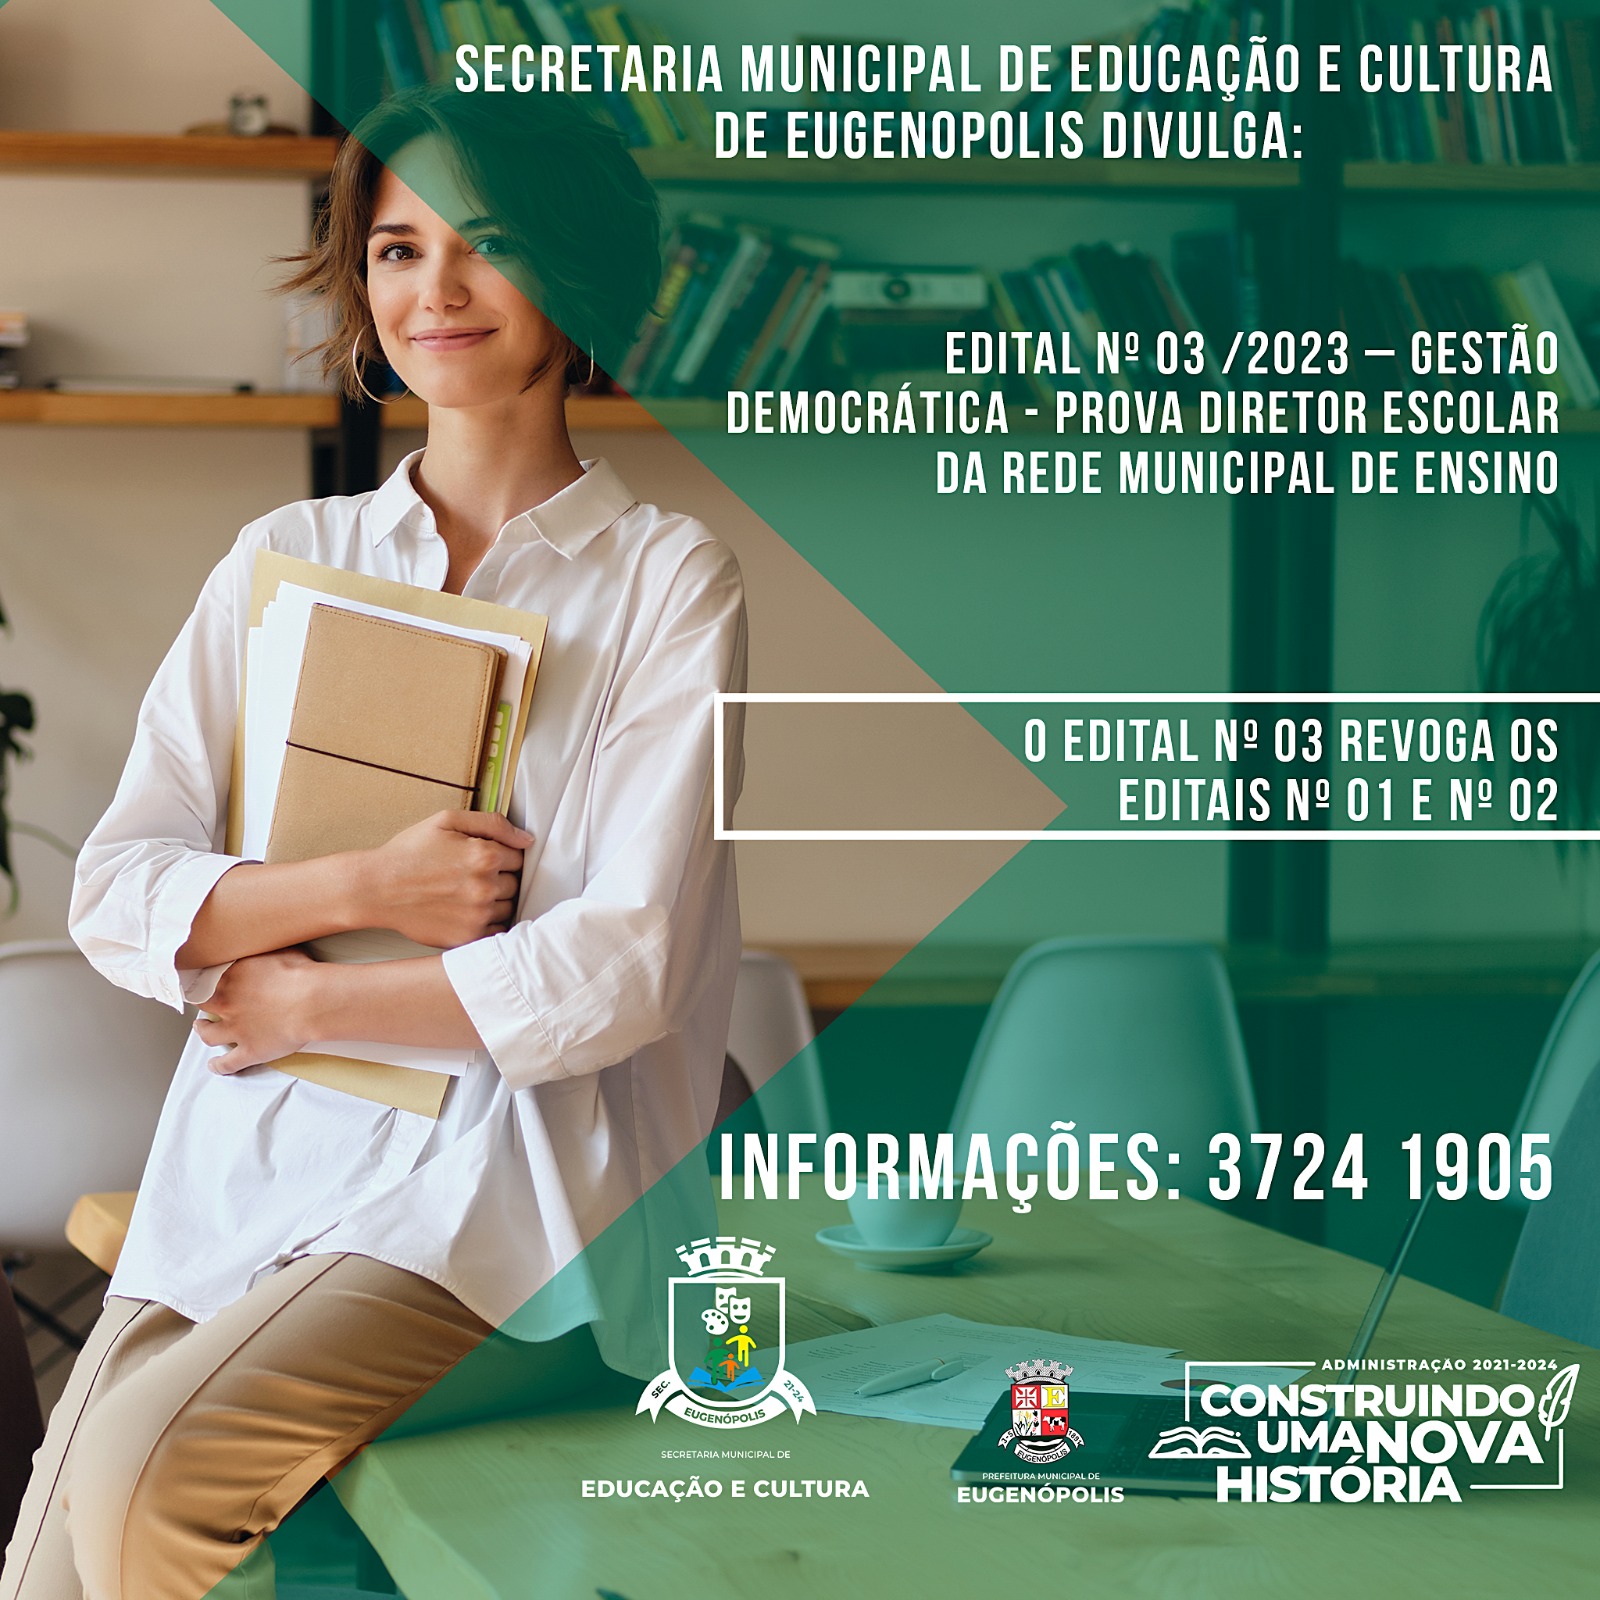 Inscrições para Edital "GESTÃO DEMOCRÁTICA" 003/2023